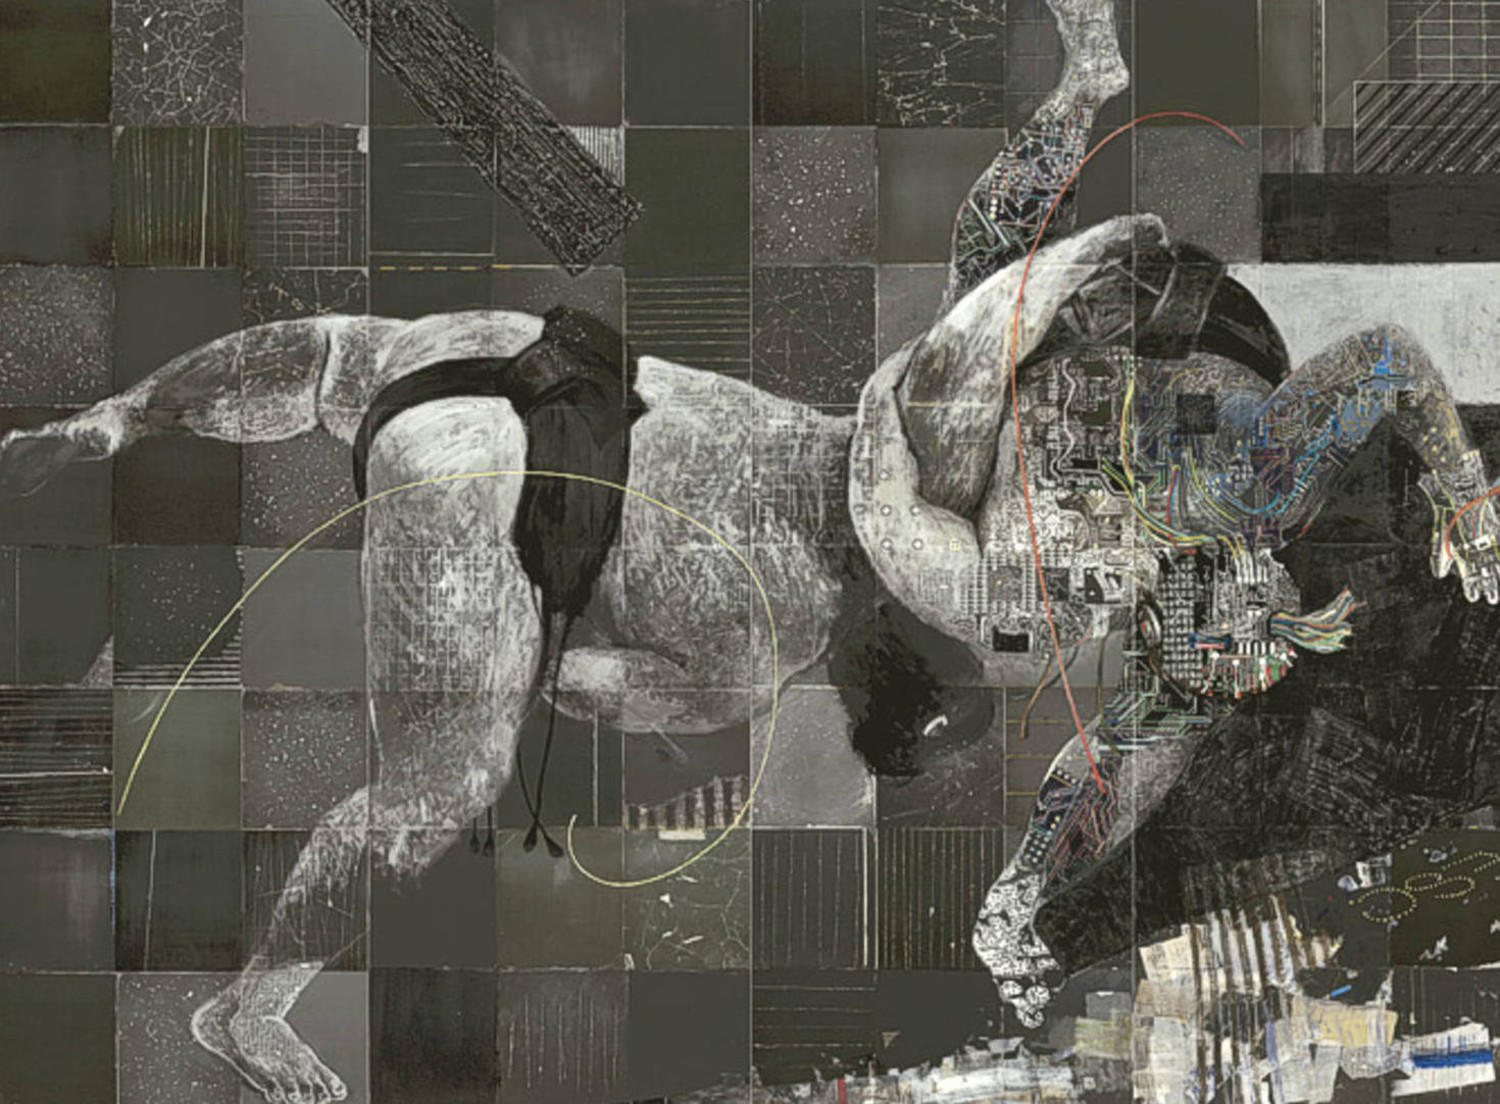 Архитектура соперничества (Виртуальный мир). Лилия Баласанова. 2006, холст, масло, 280x200